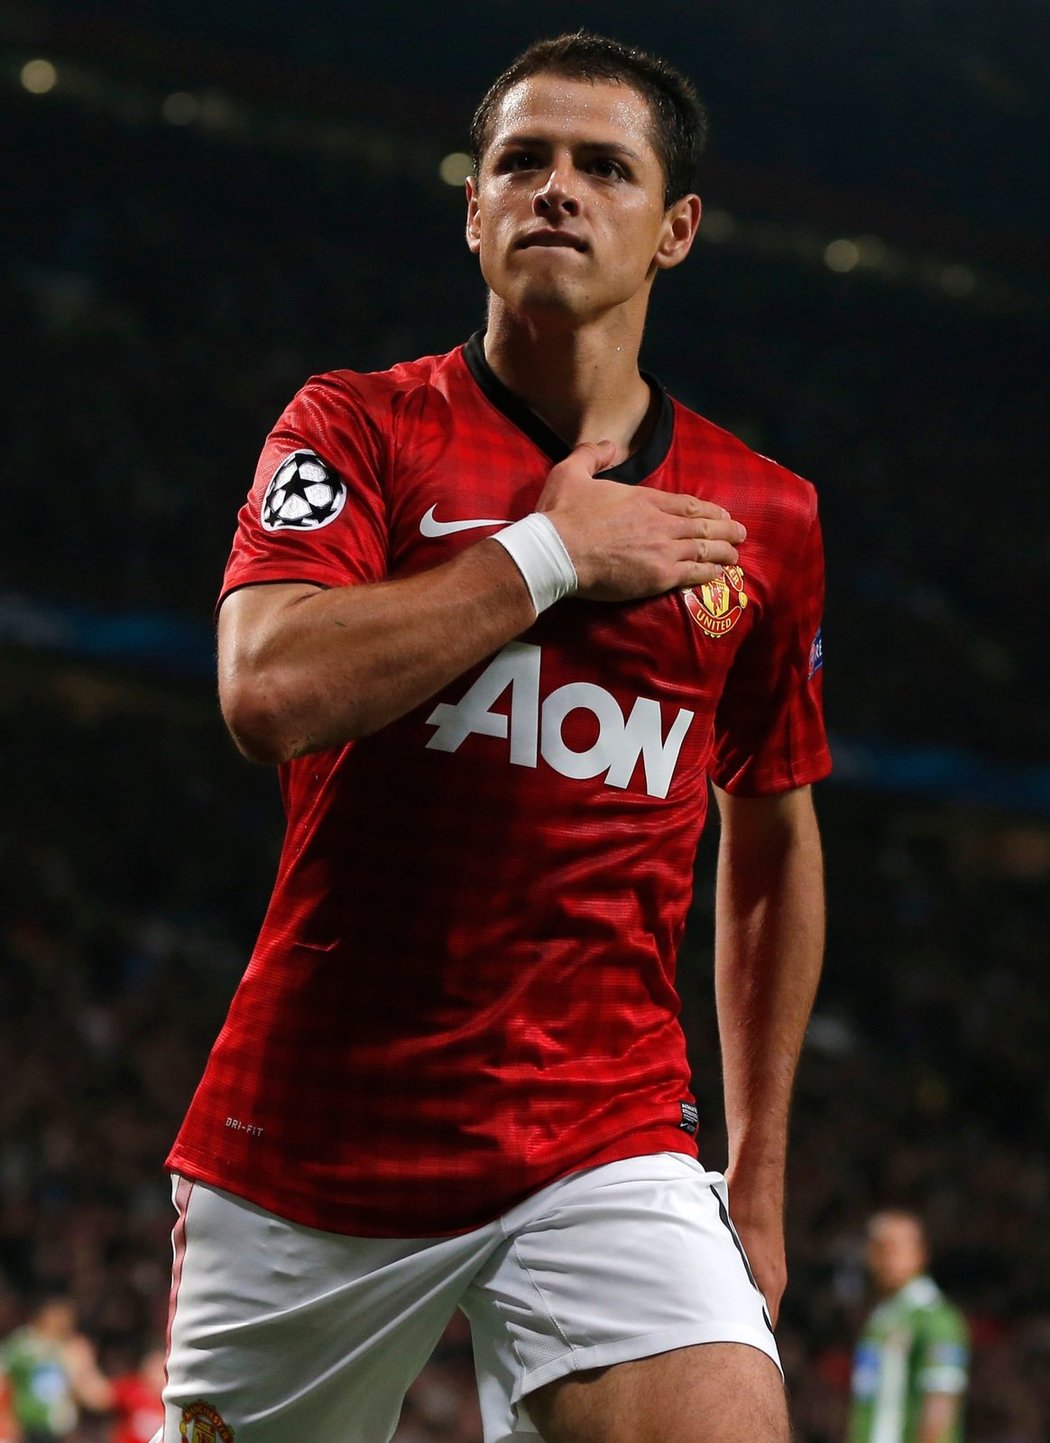 Hrdina večera. Chicharito svým senzačním výkonem pomohl k dokonalému zvratu Manchesteru United.